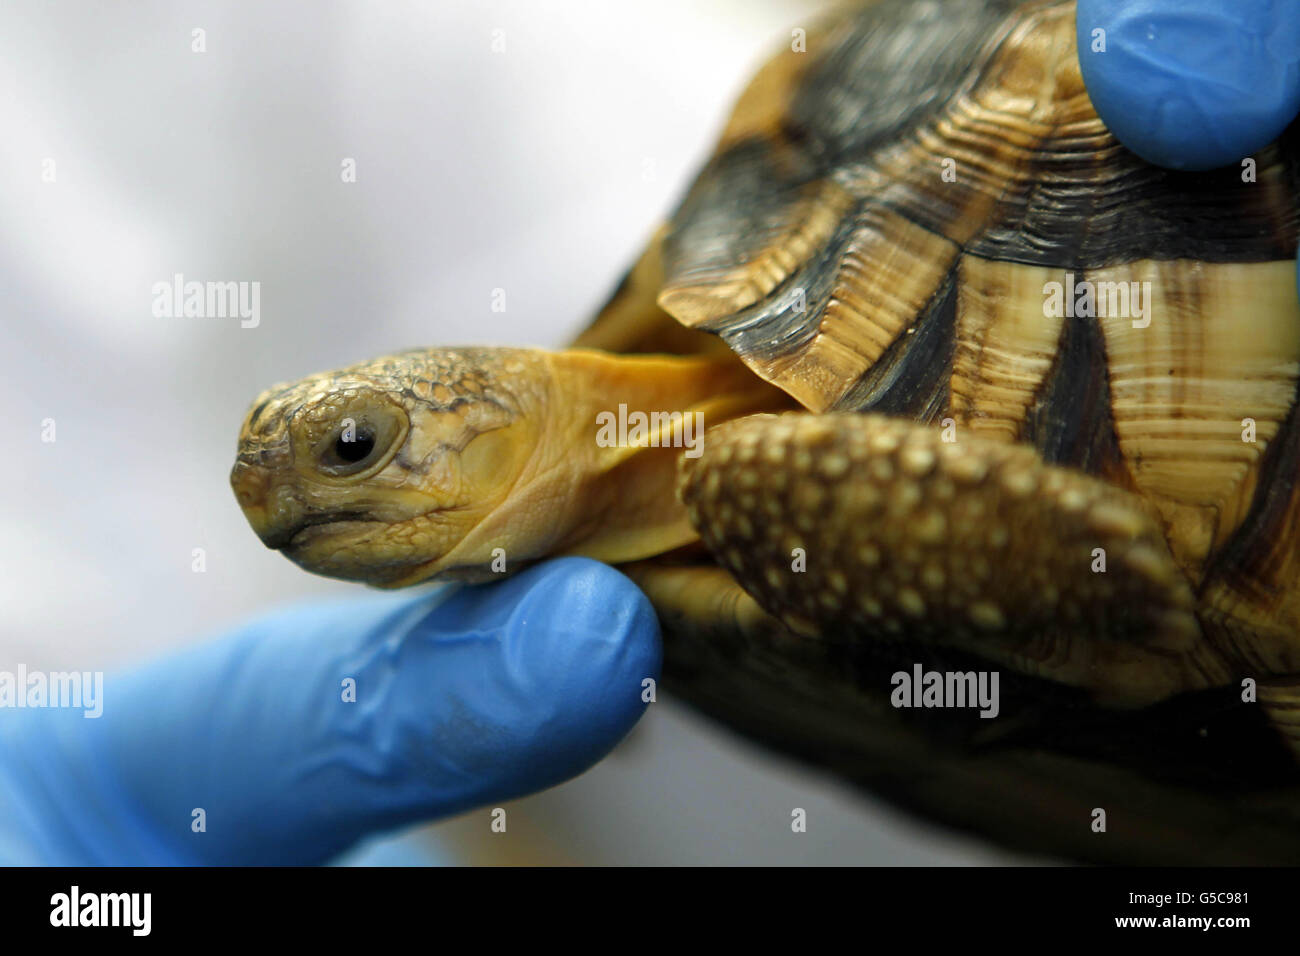 Dr. Gerardo Garcia, Kurator für Niederwirbel und Wirbellose im Zoo von Chester, mit einer von vier Plowshare Tortoise, einer der am meisten bedrohten Arten auf dem Planeten, die aus Hongkong gerettet wurden und das erste europäische Zuchtprogramm starten wird. Stockfoto